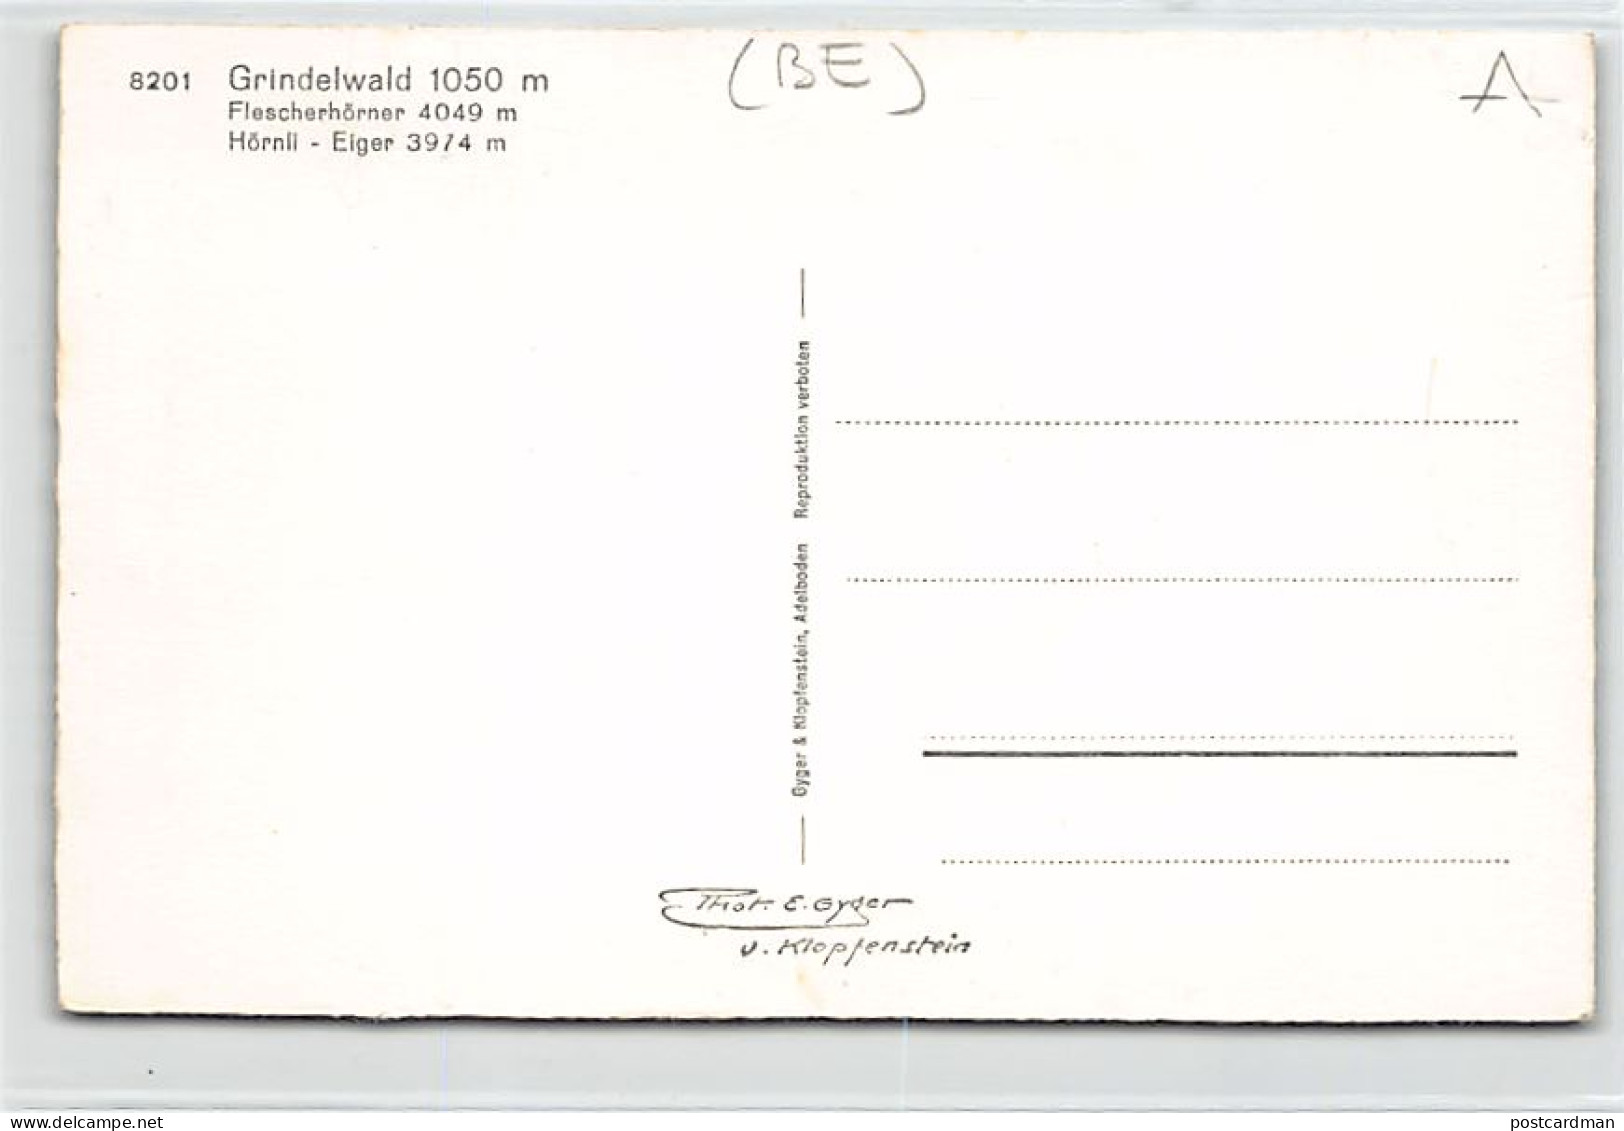 GRINDELWALD (BE) Totalansicht - Verlag E. Gyger 8201 - Grindelwald